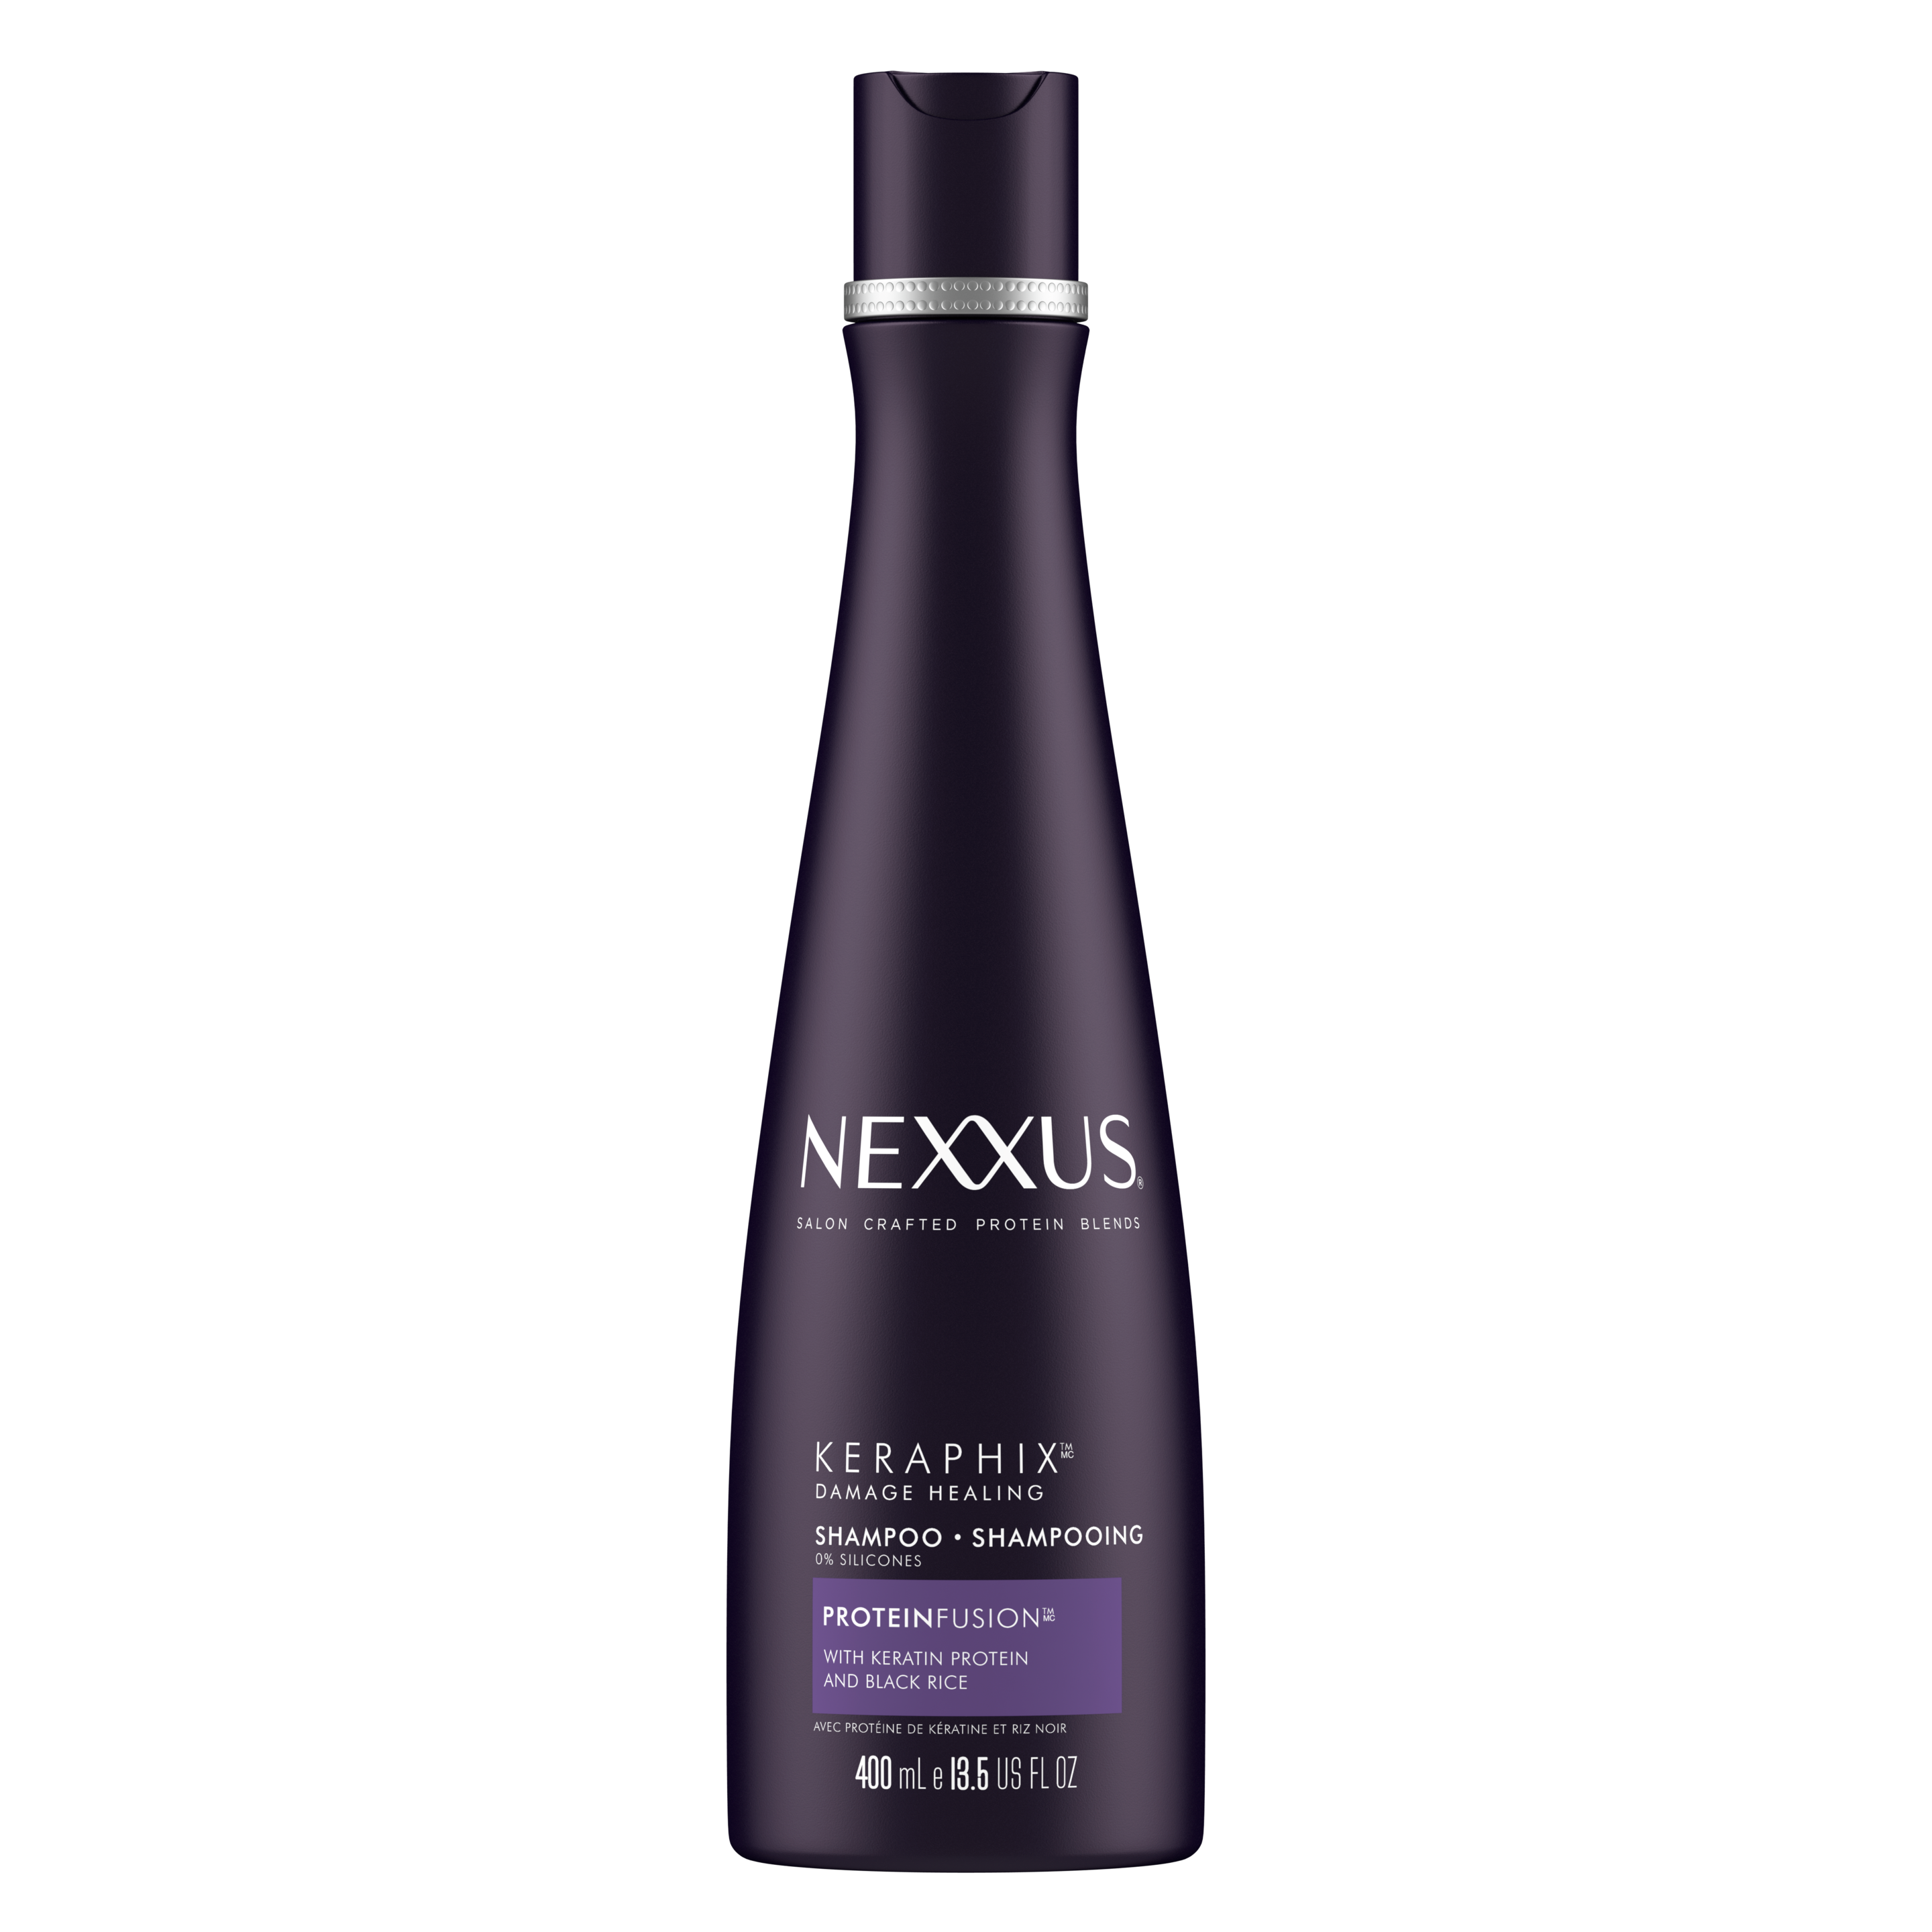 Face de l'emballage du shampooing Keraphix pour cheveux abîmés de Nexxus